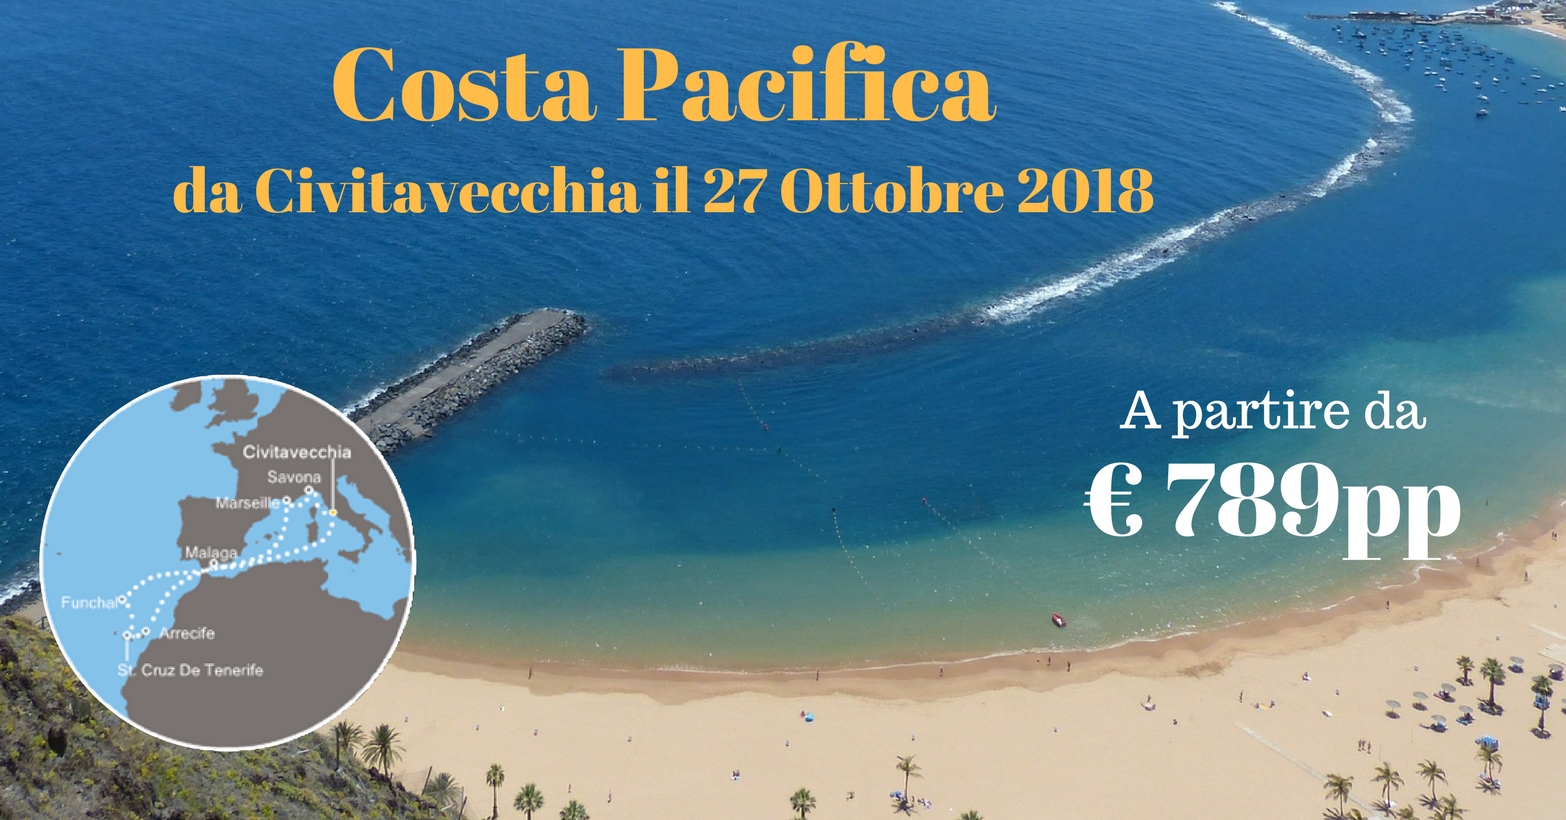 IMPERDIBILE: Costa Pacifica 27 Ottobre 2018 da Civitavecchia